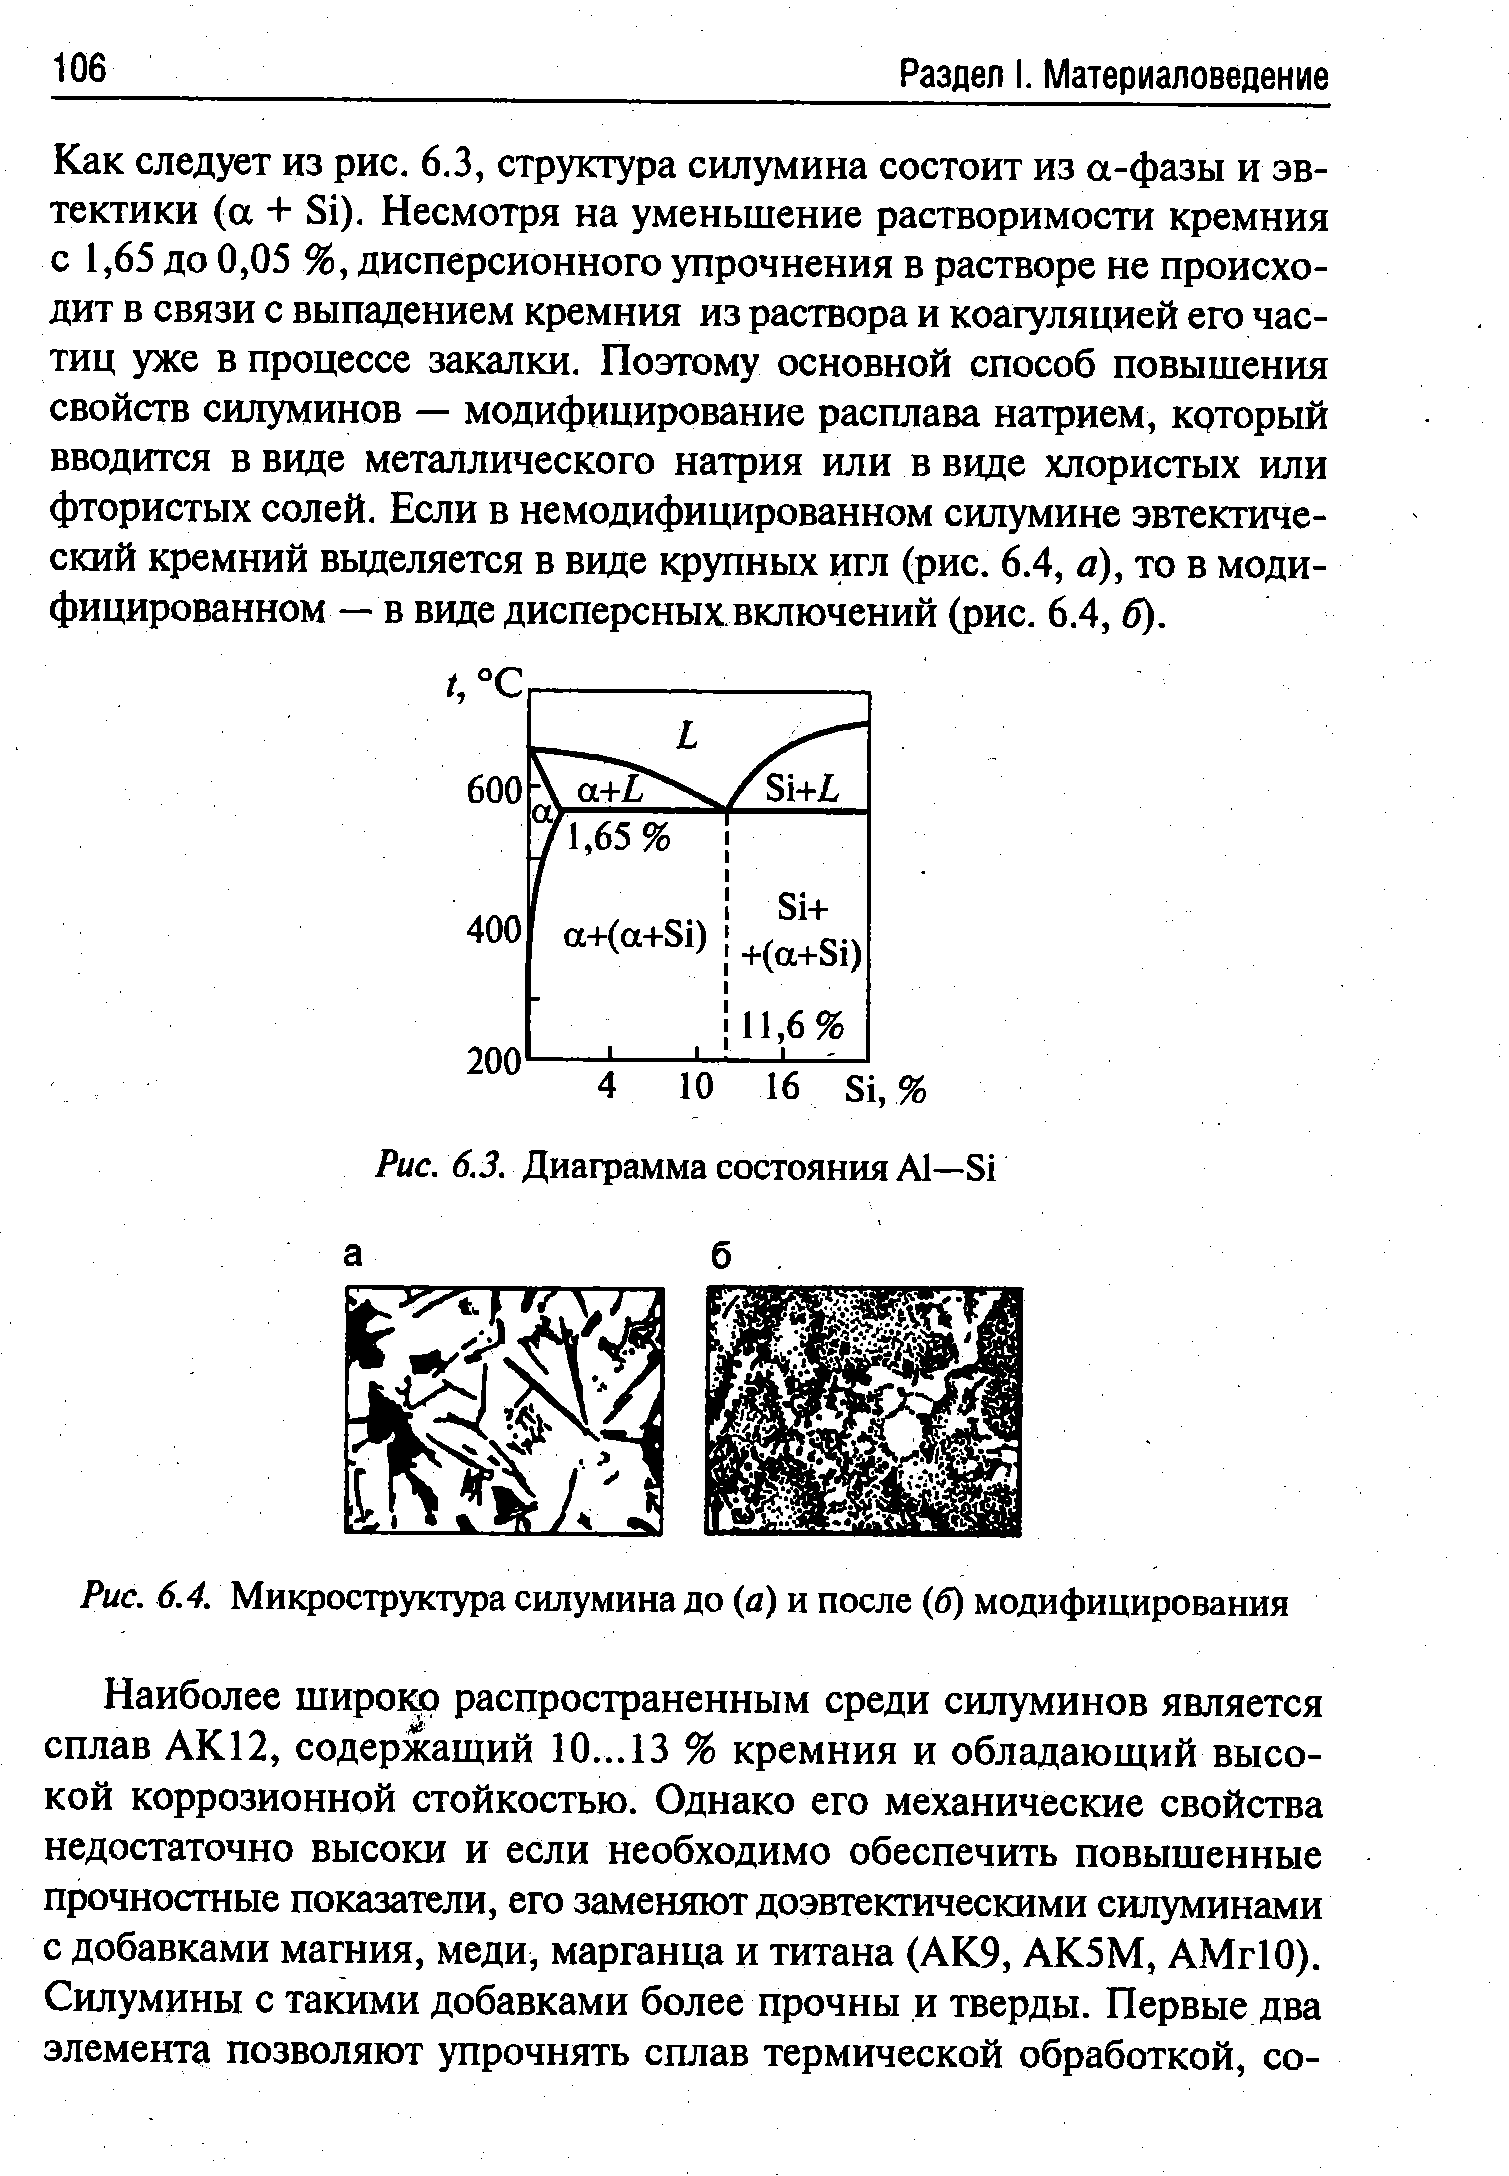 Рис. 6.4. Микроструктура силумина до (а) и после (б) модифицирования
